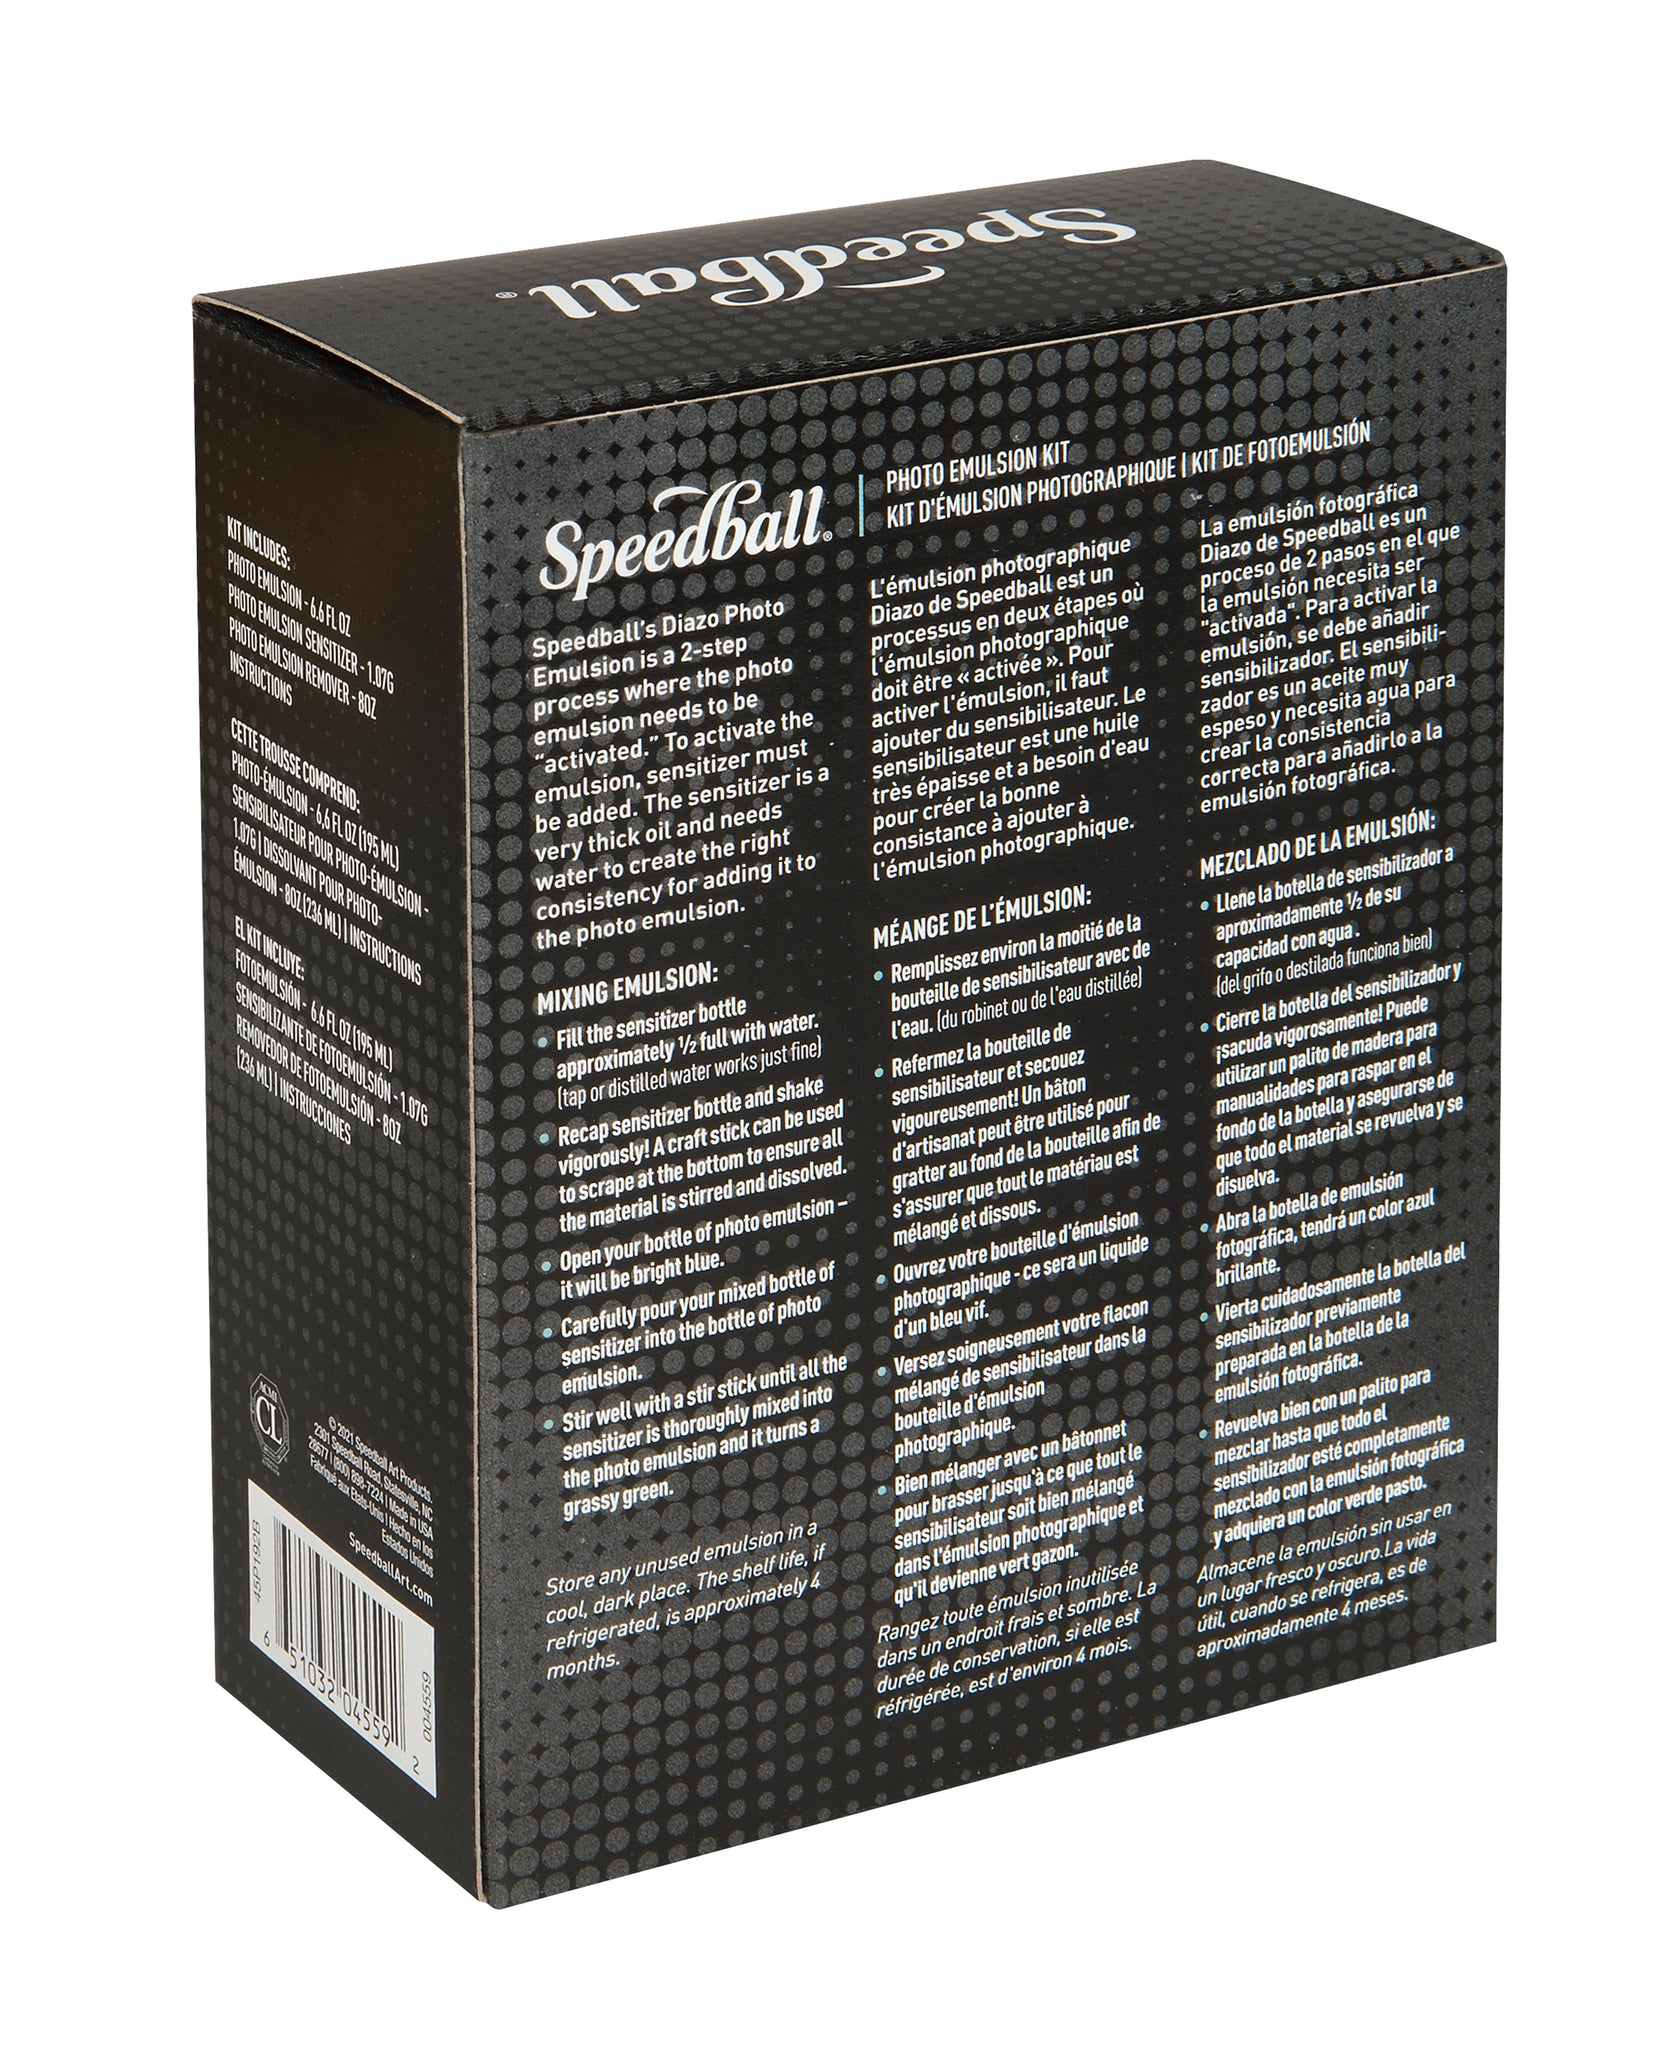 Speedball - DIAZO Kit di emulsione fotografica per serigrafia